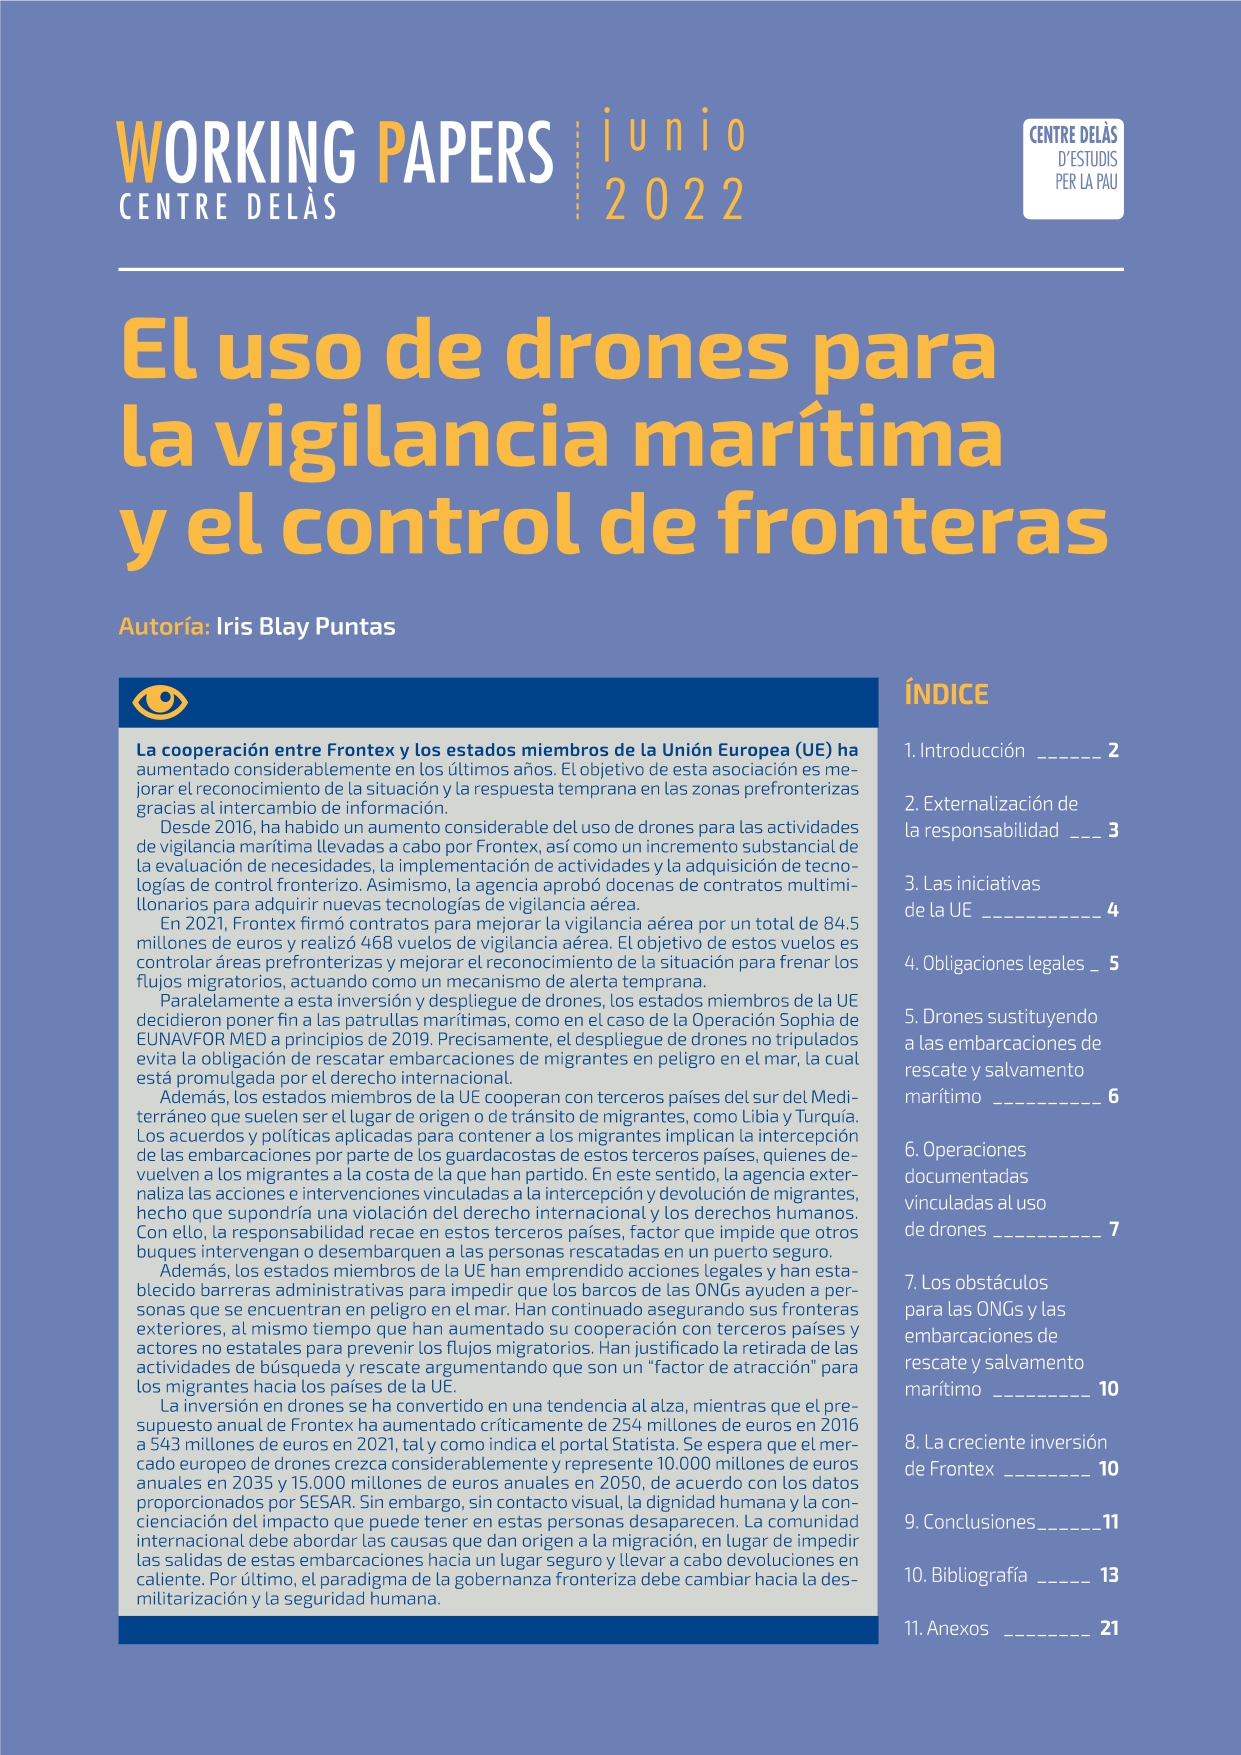 Working Paper “El uso de drones para la vigilancia marítima y el control de fronteras”